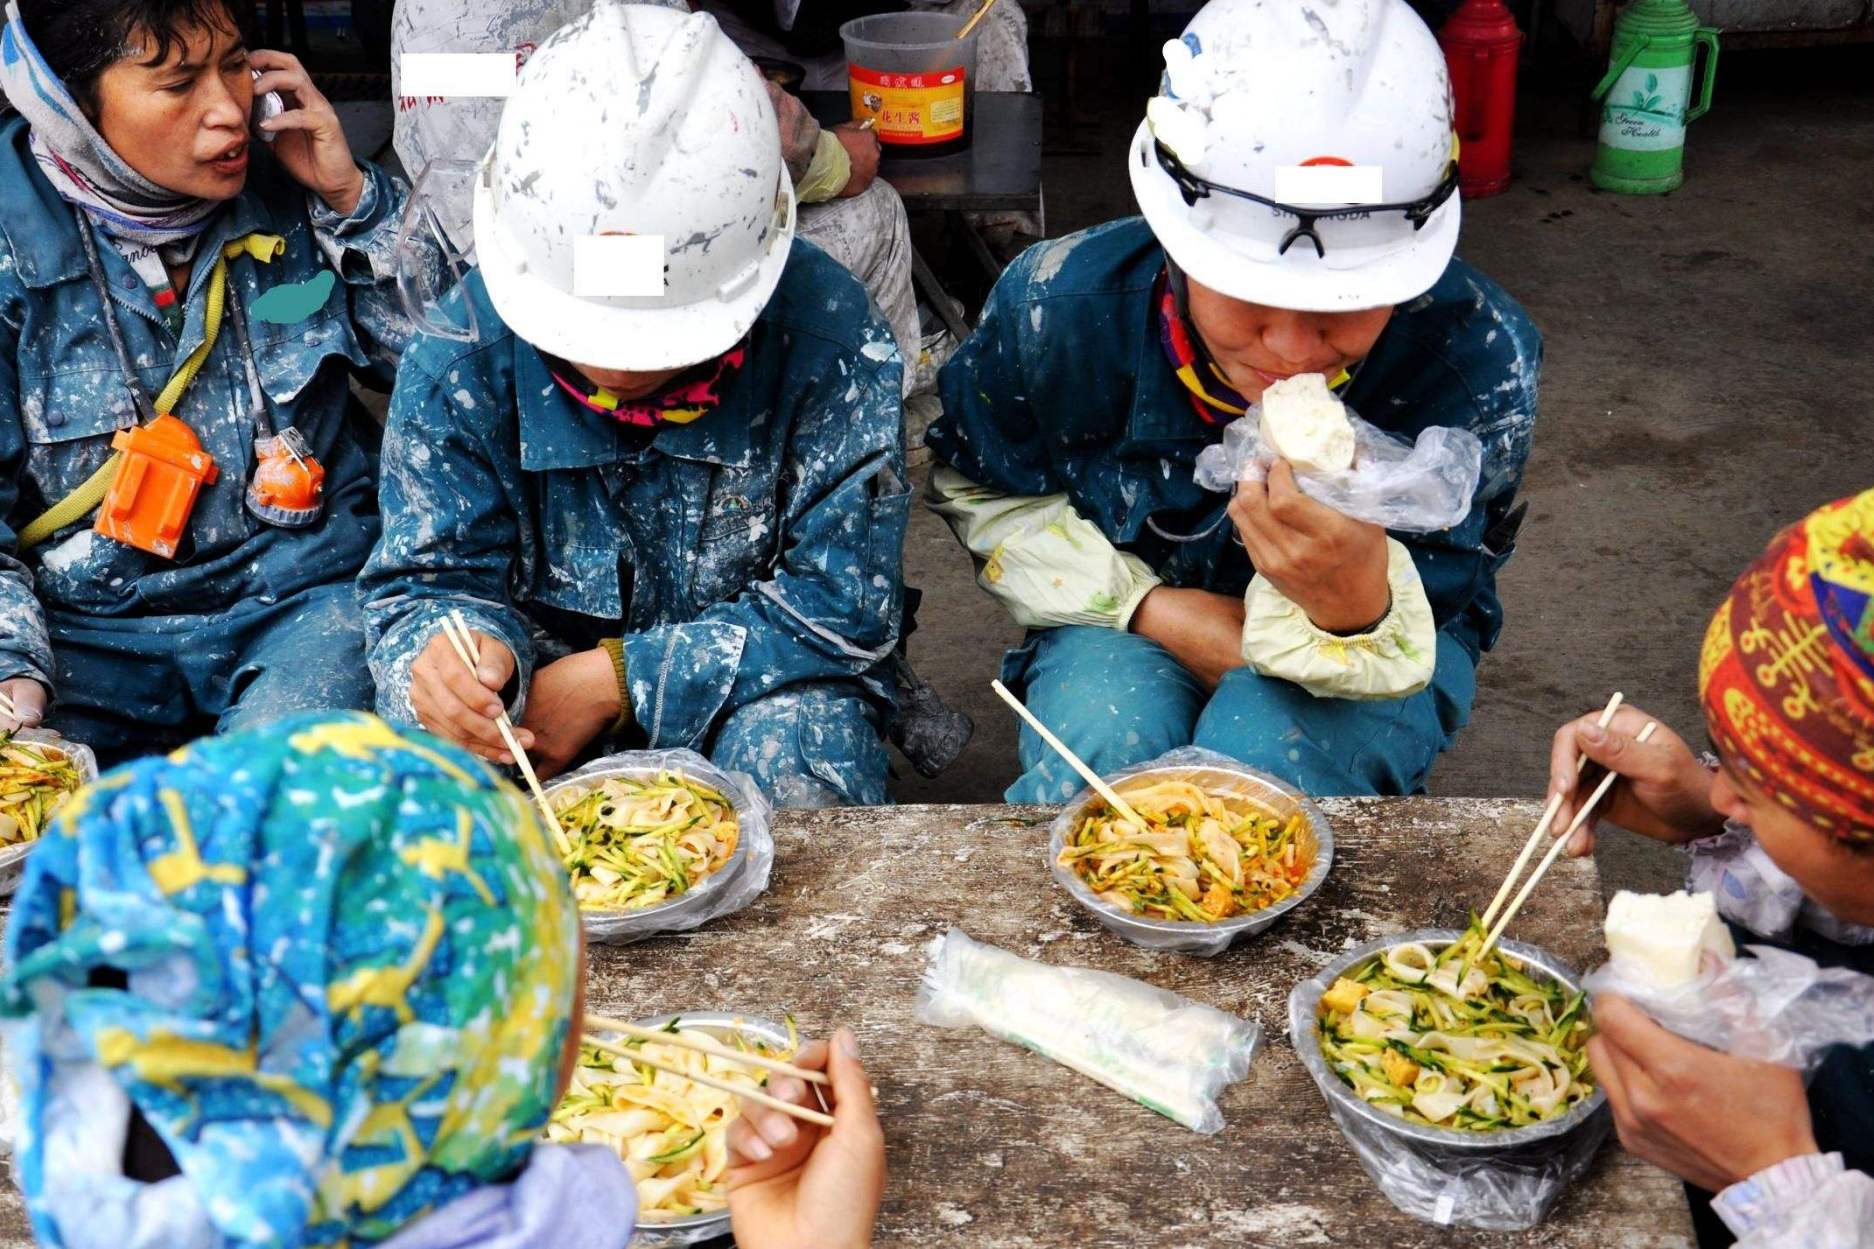 镜头下农民工的生活10图 抱大桶喝水 400人同住一个间大棚-搜狐大视野-搜狐新闻